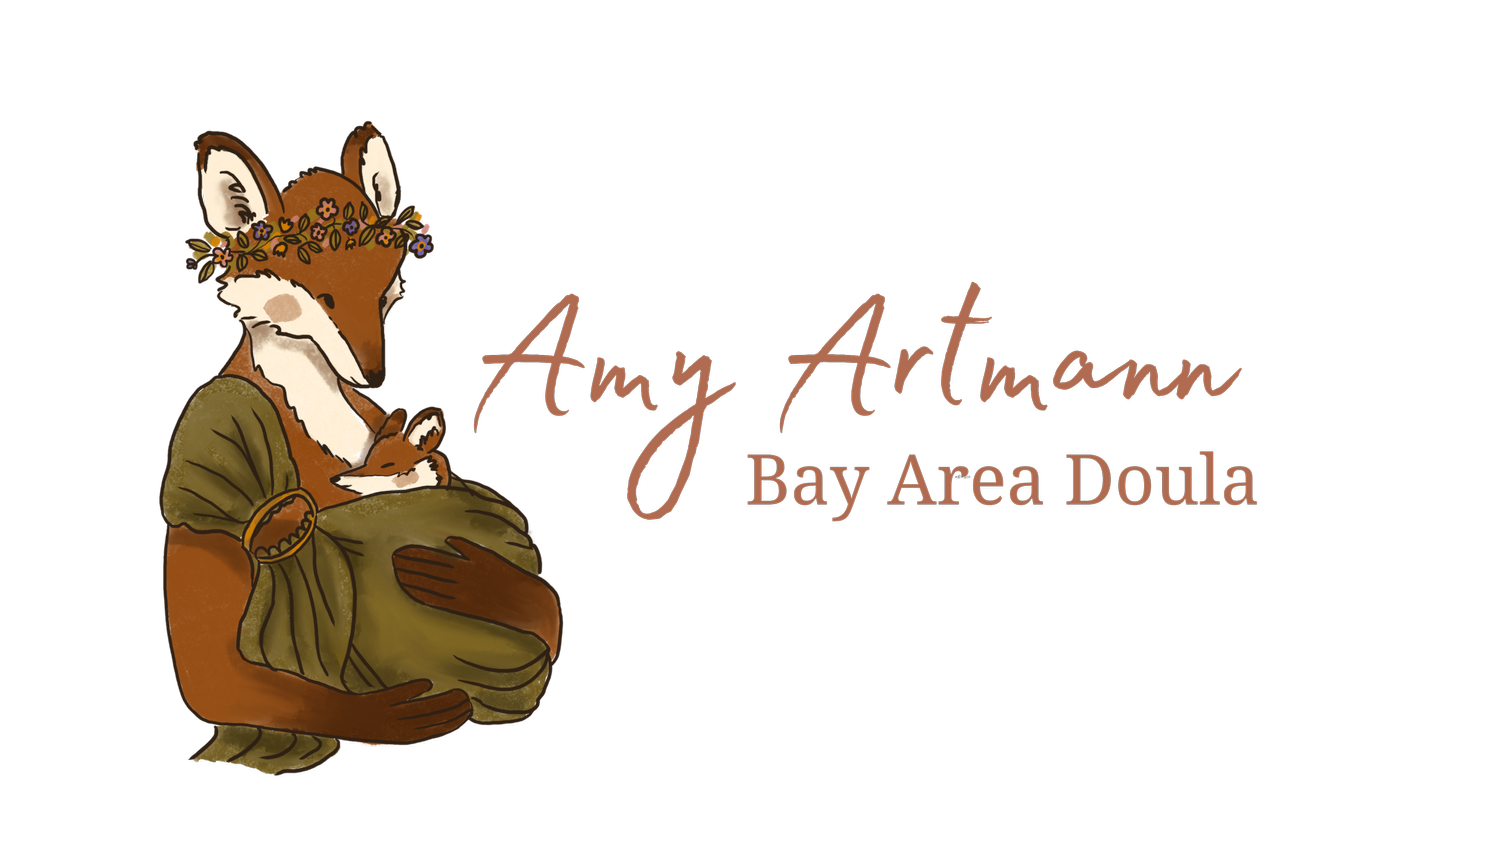 Amy Artmann Bay Area Doula